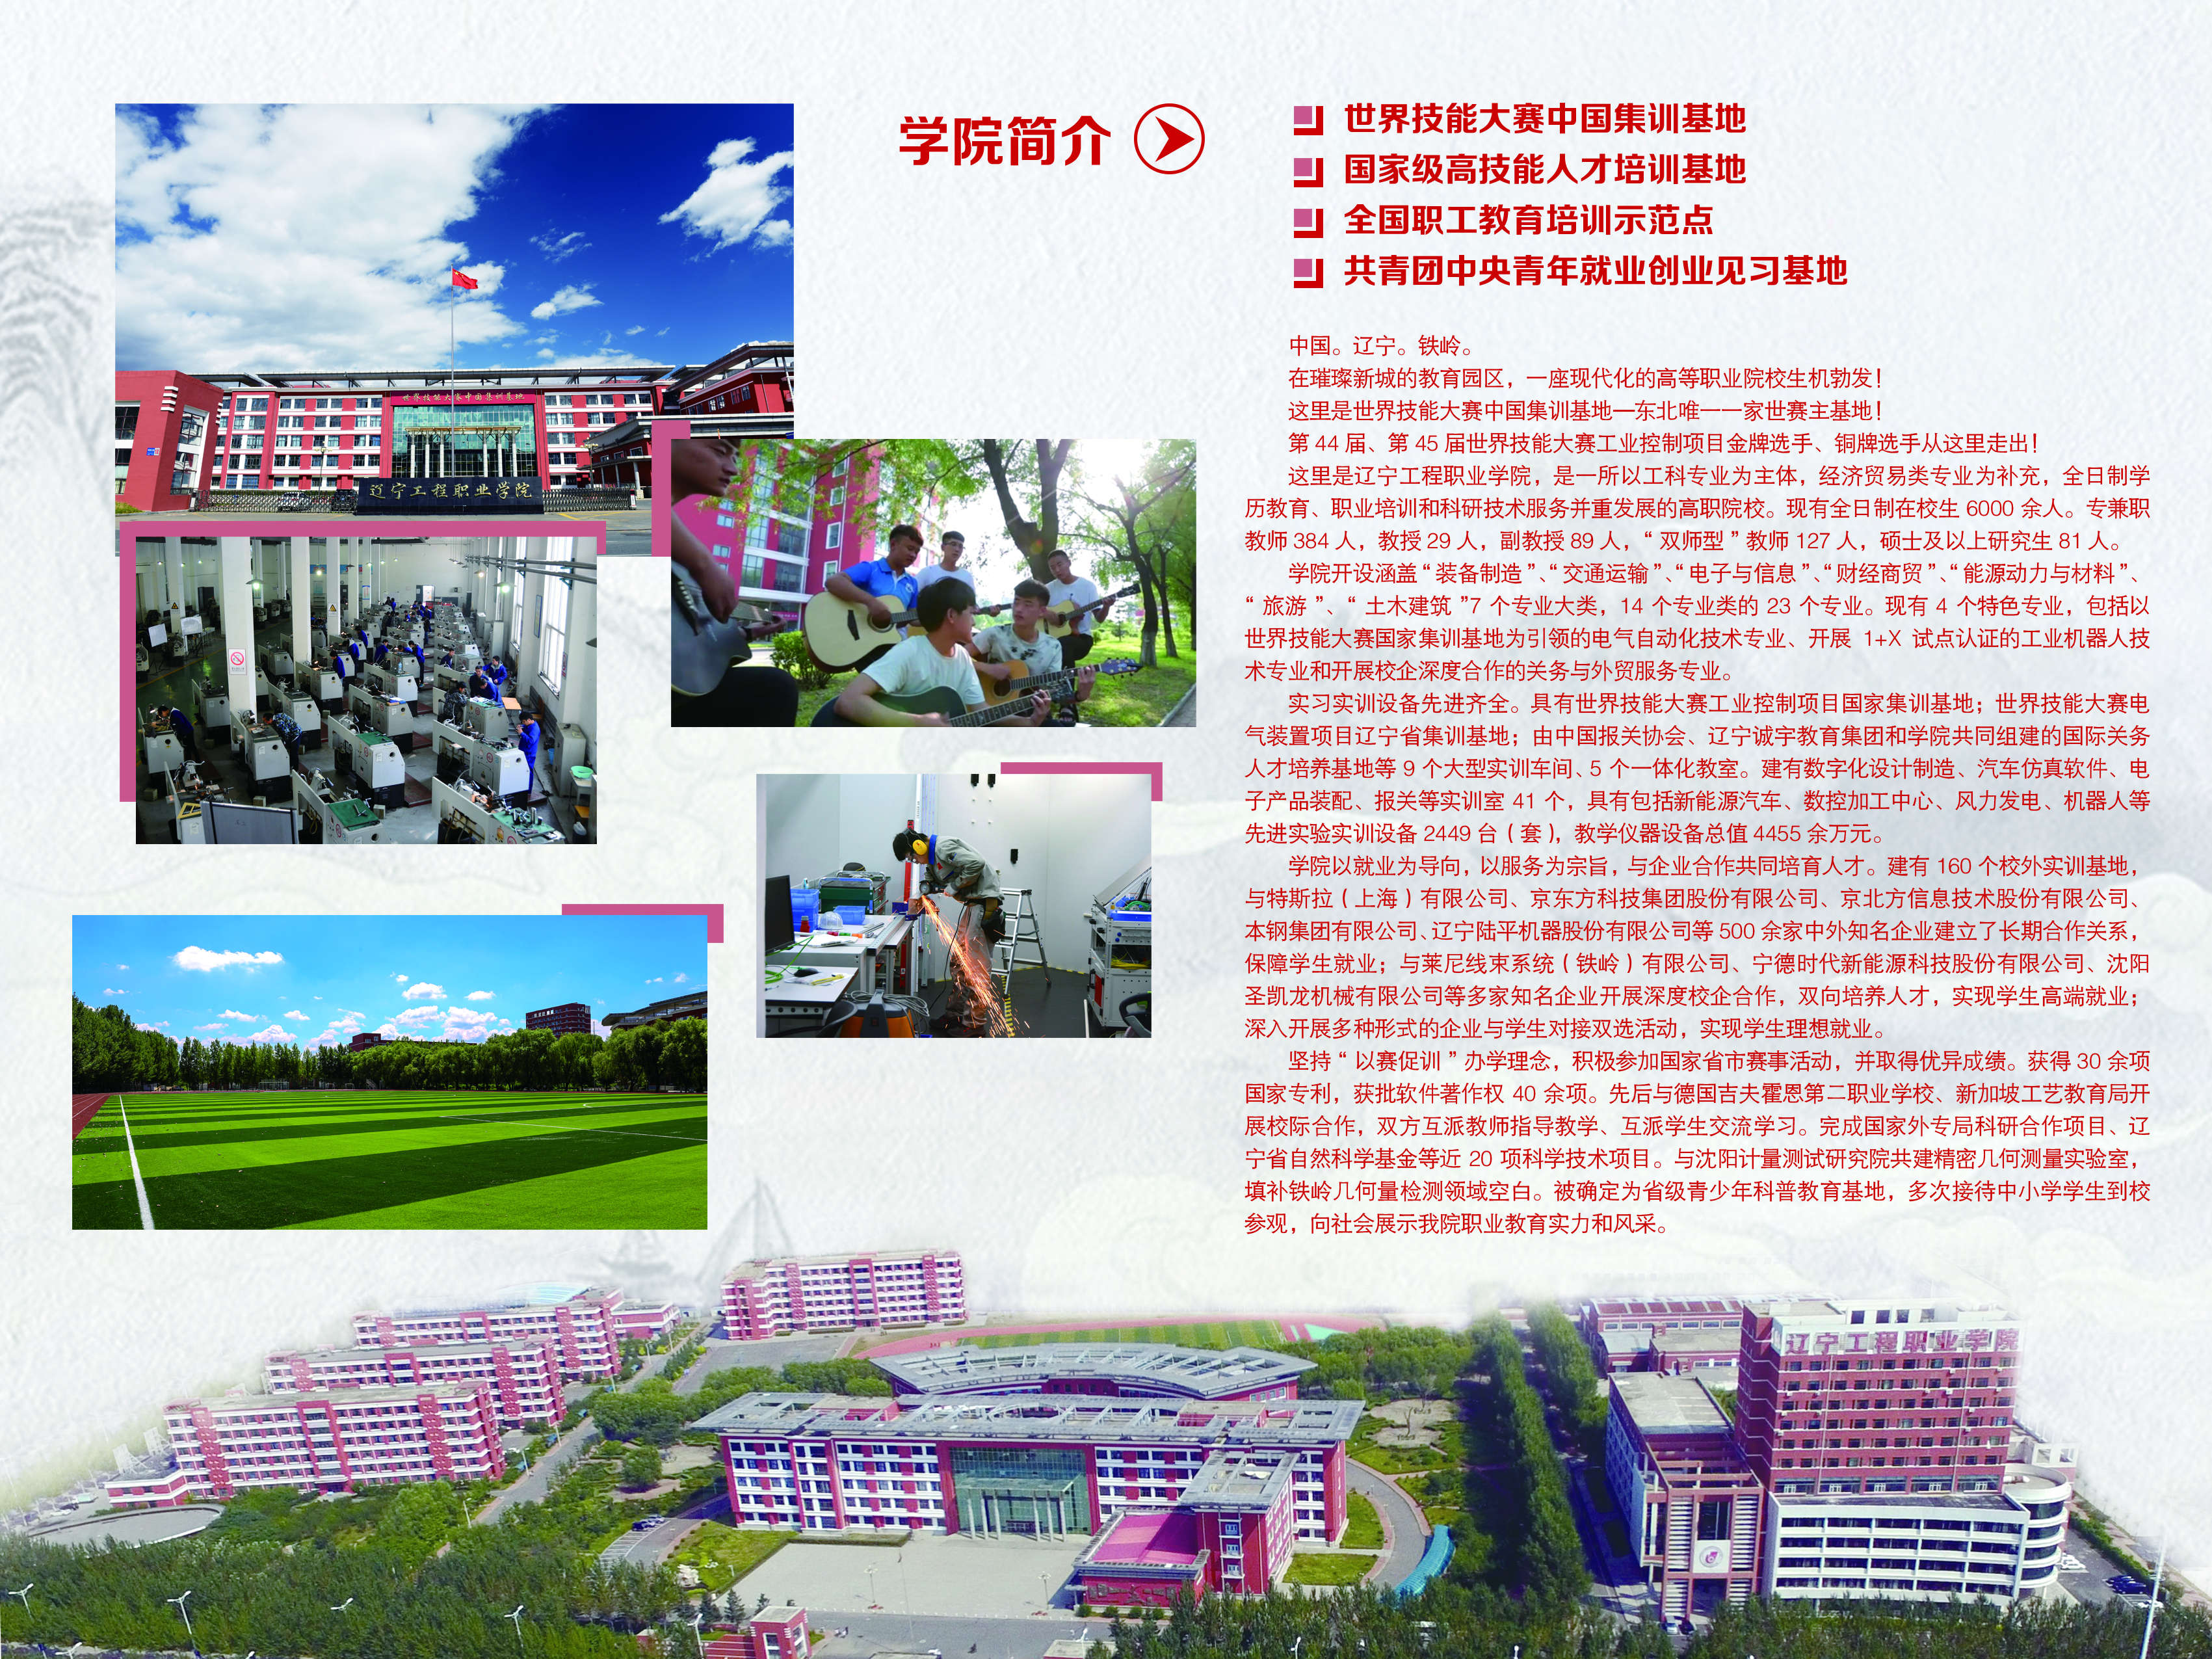 遼寧工程職業學院2021年招生簡章